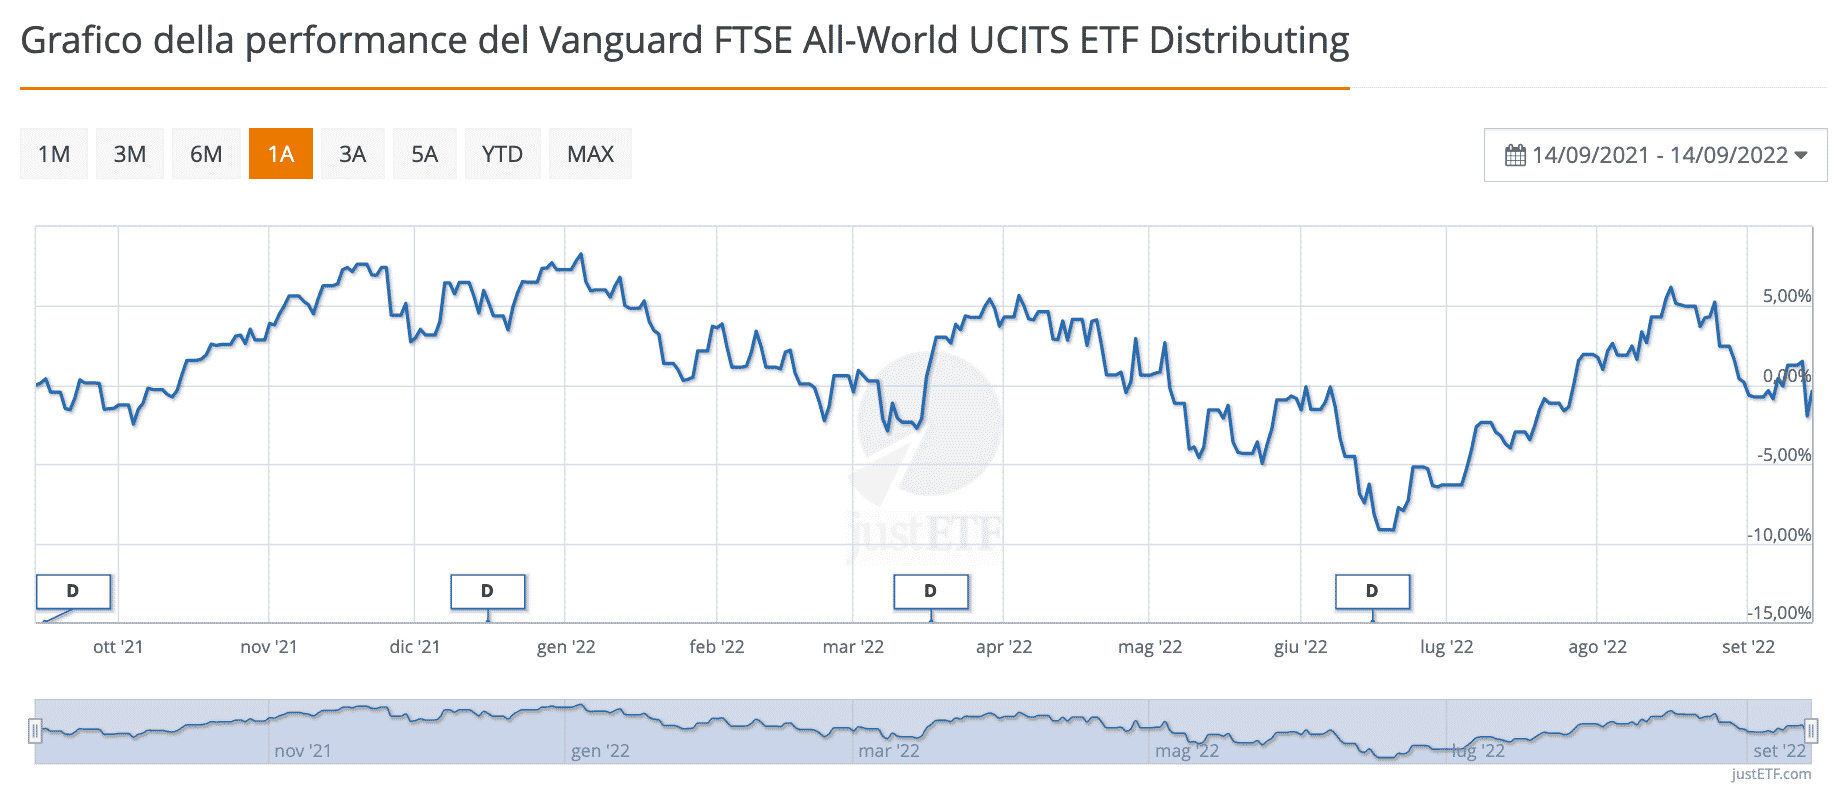 Andamento dell'FTSE World di Vanguard nell'ultimo anno, per paragonare msci vs ftse